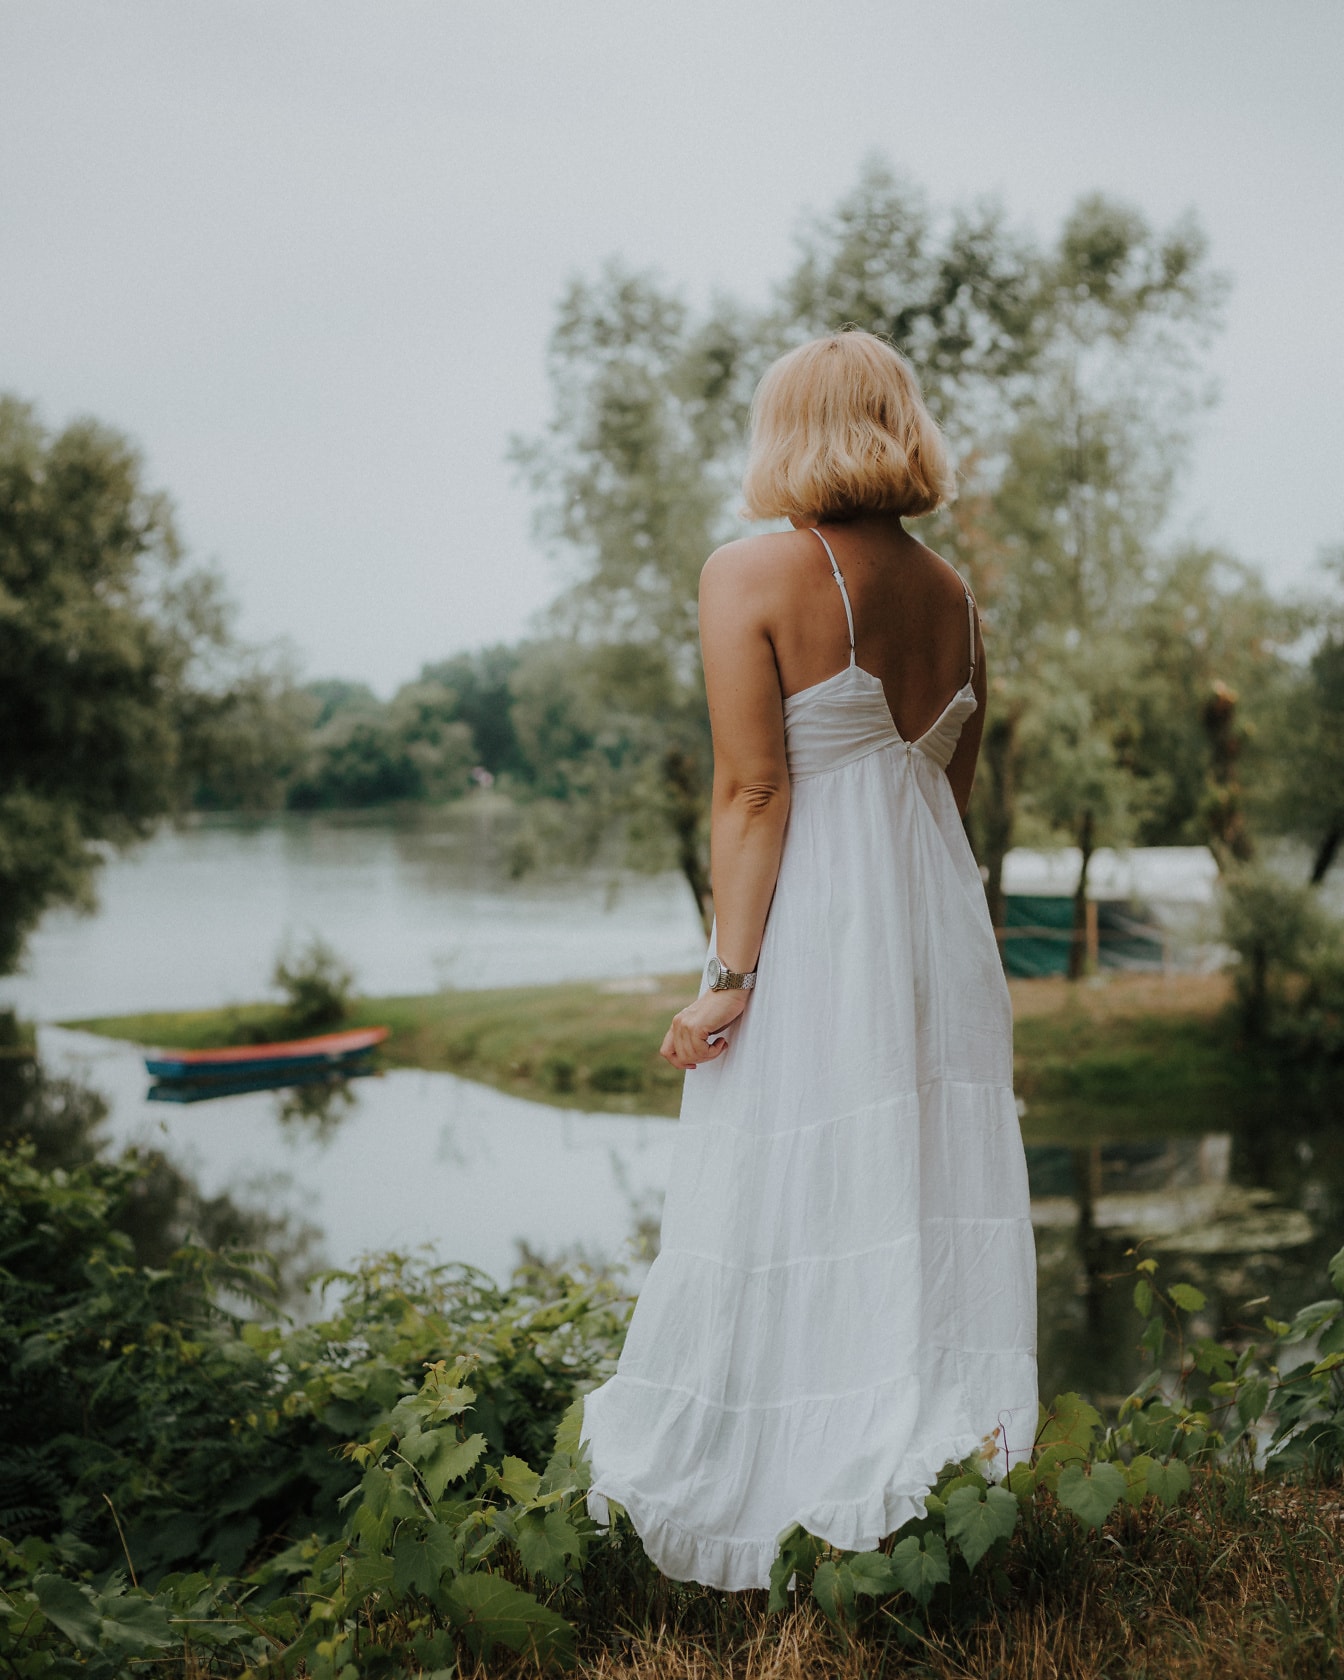 Ξανθιά γυναίκα με λευκό εξώπλατο φόρεμα στέκεται δίπλα στο νερό της λίμνης